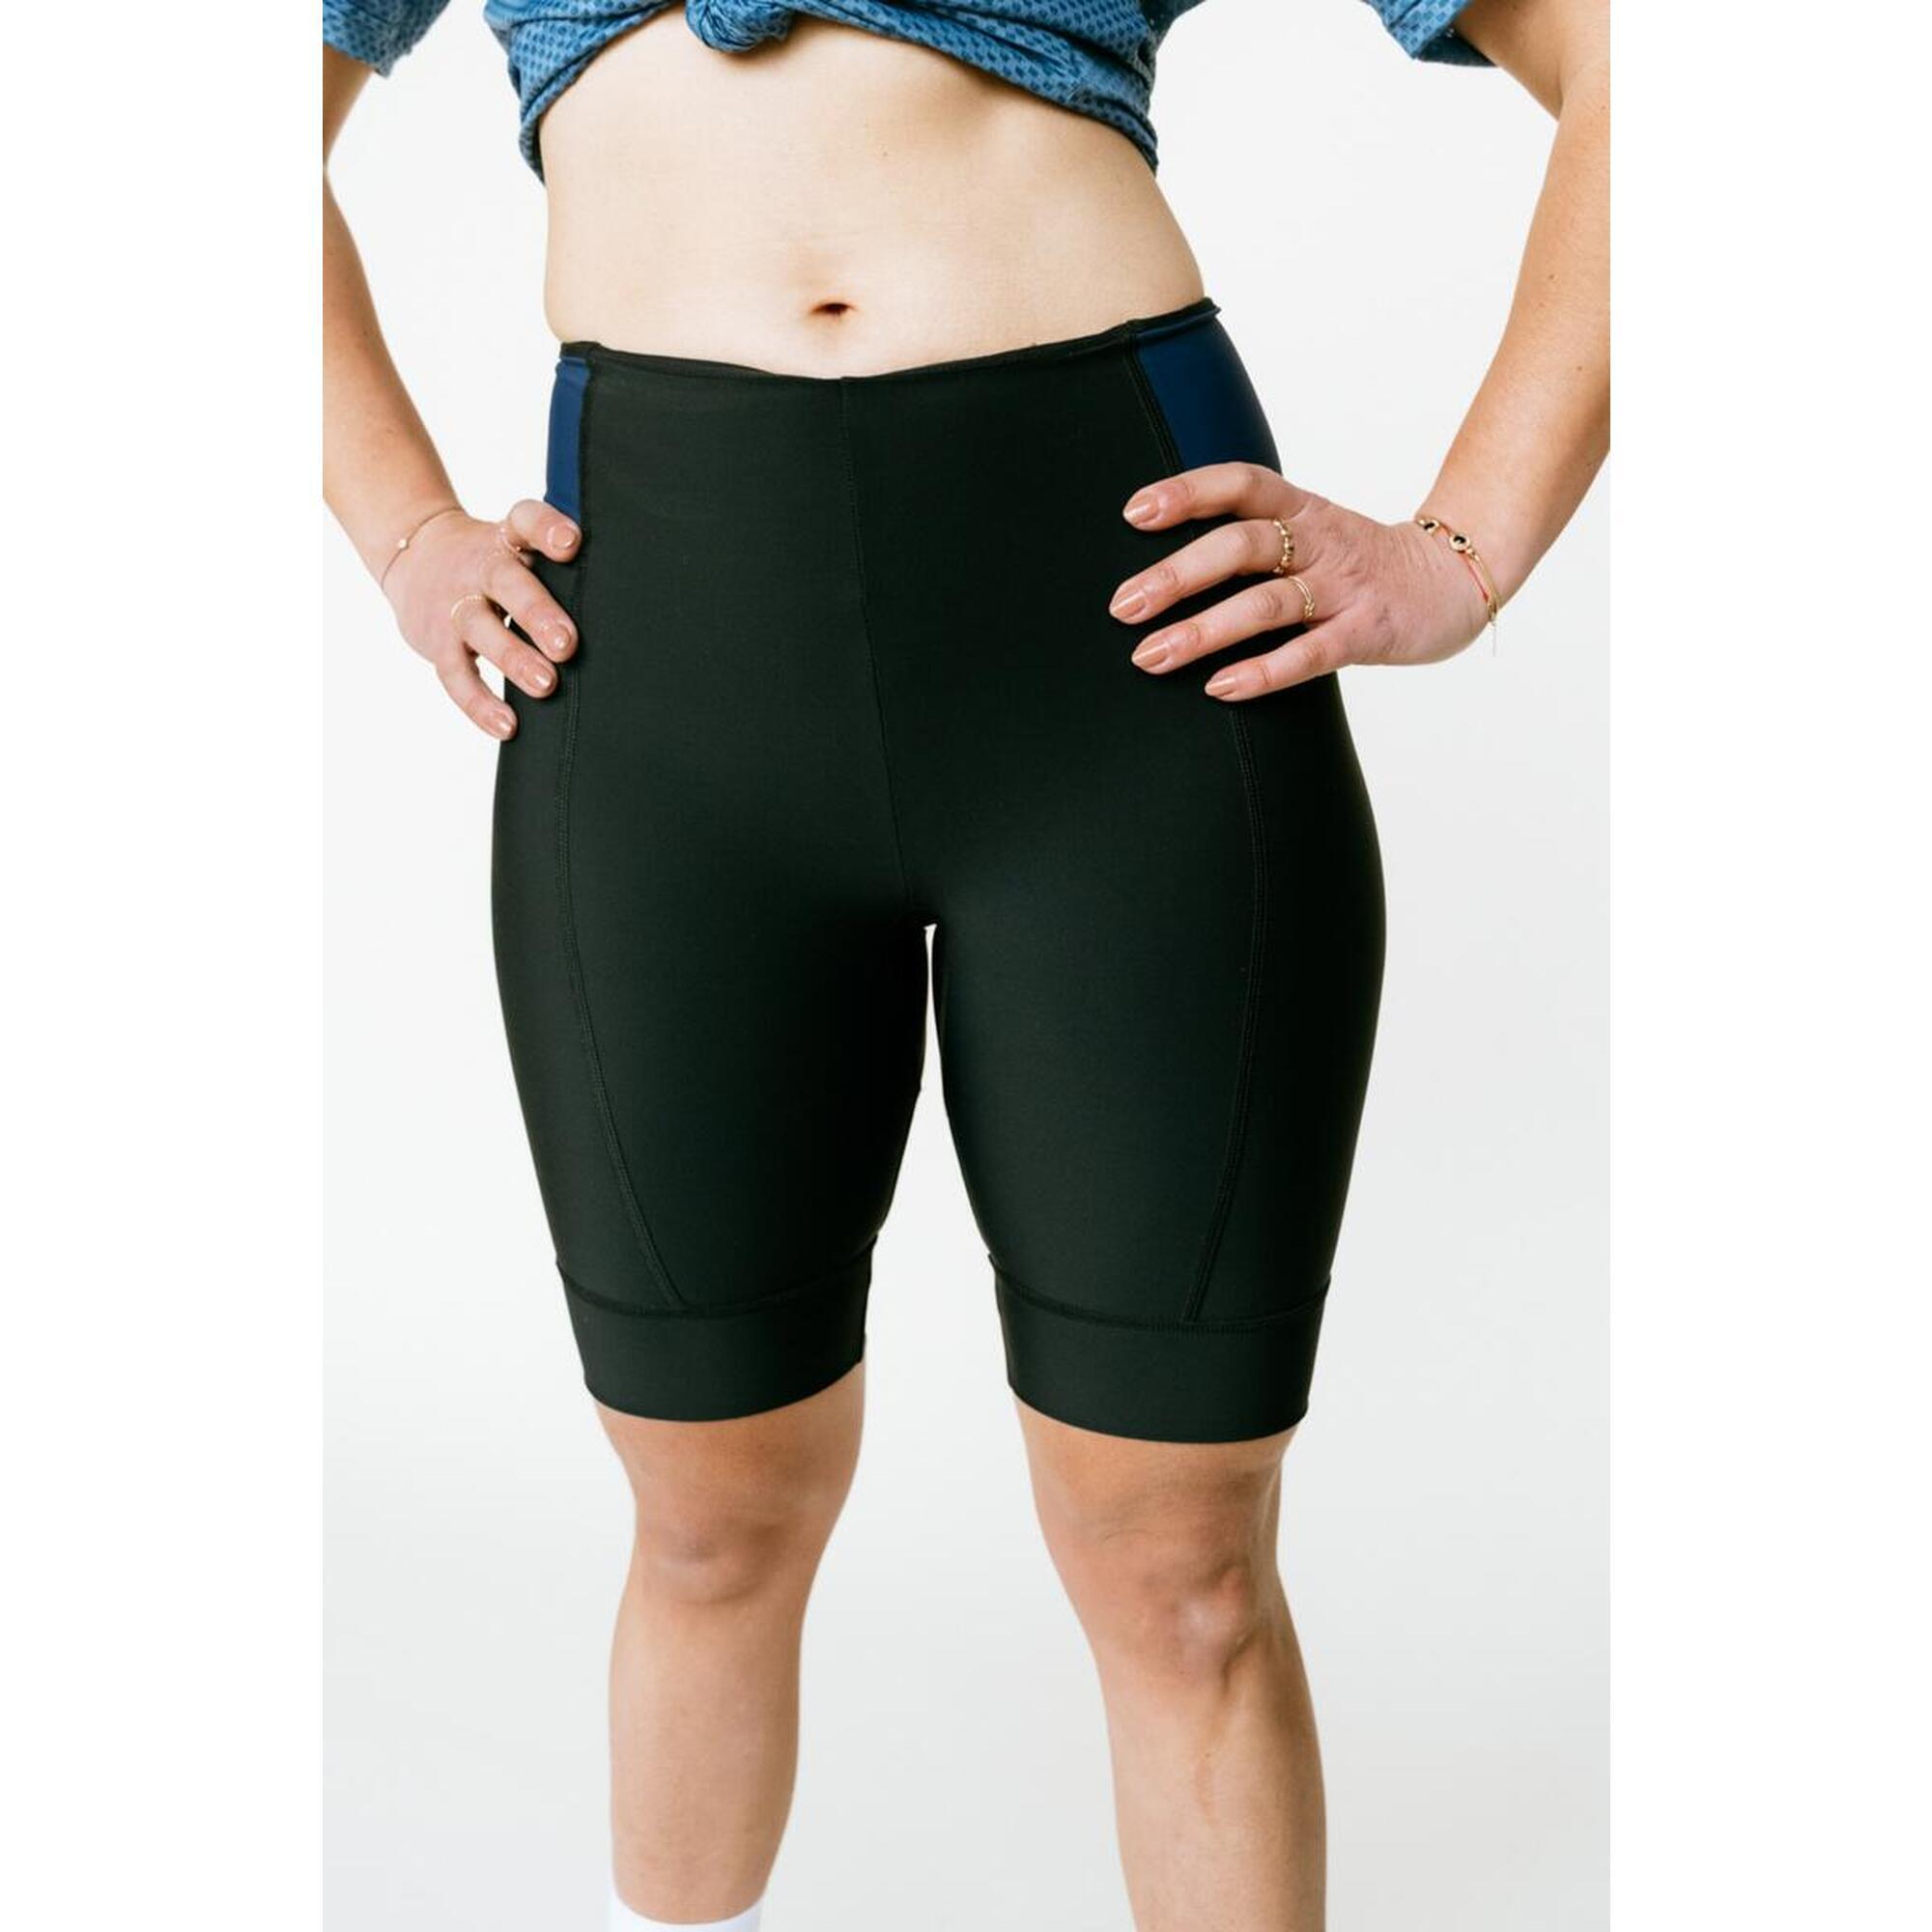 Short Cysclisme Femme Sans Pad